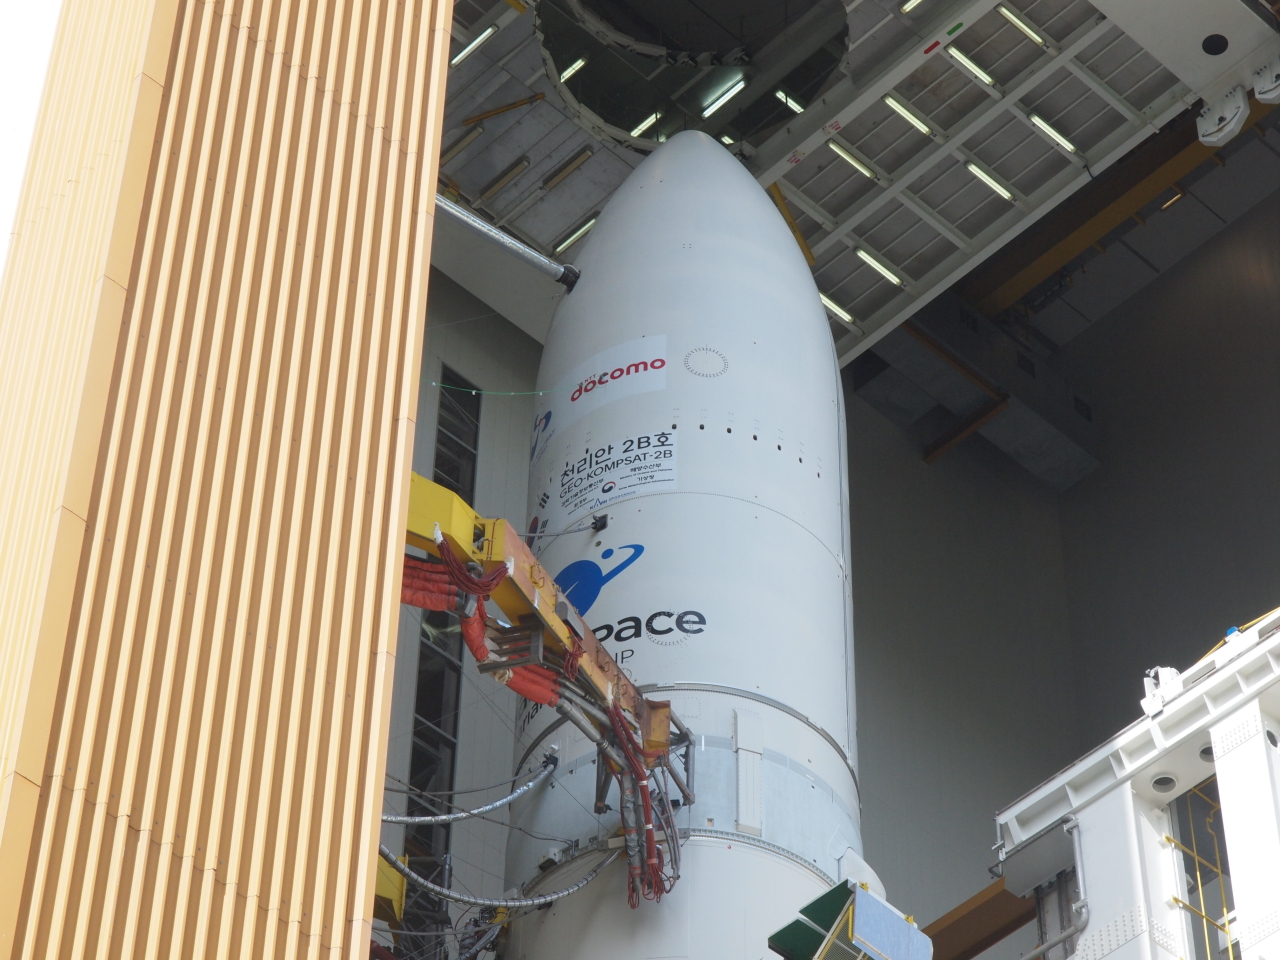 Chollian 2B on the Ariane 5 ECA rocket (KARI)